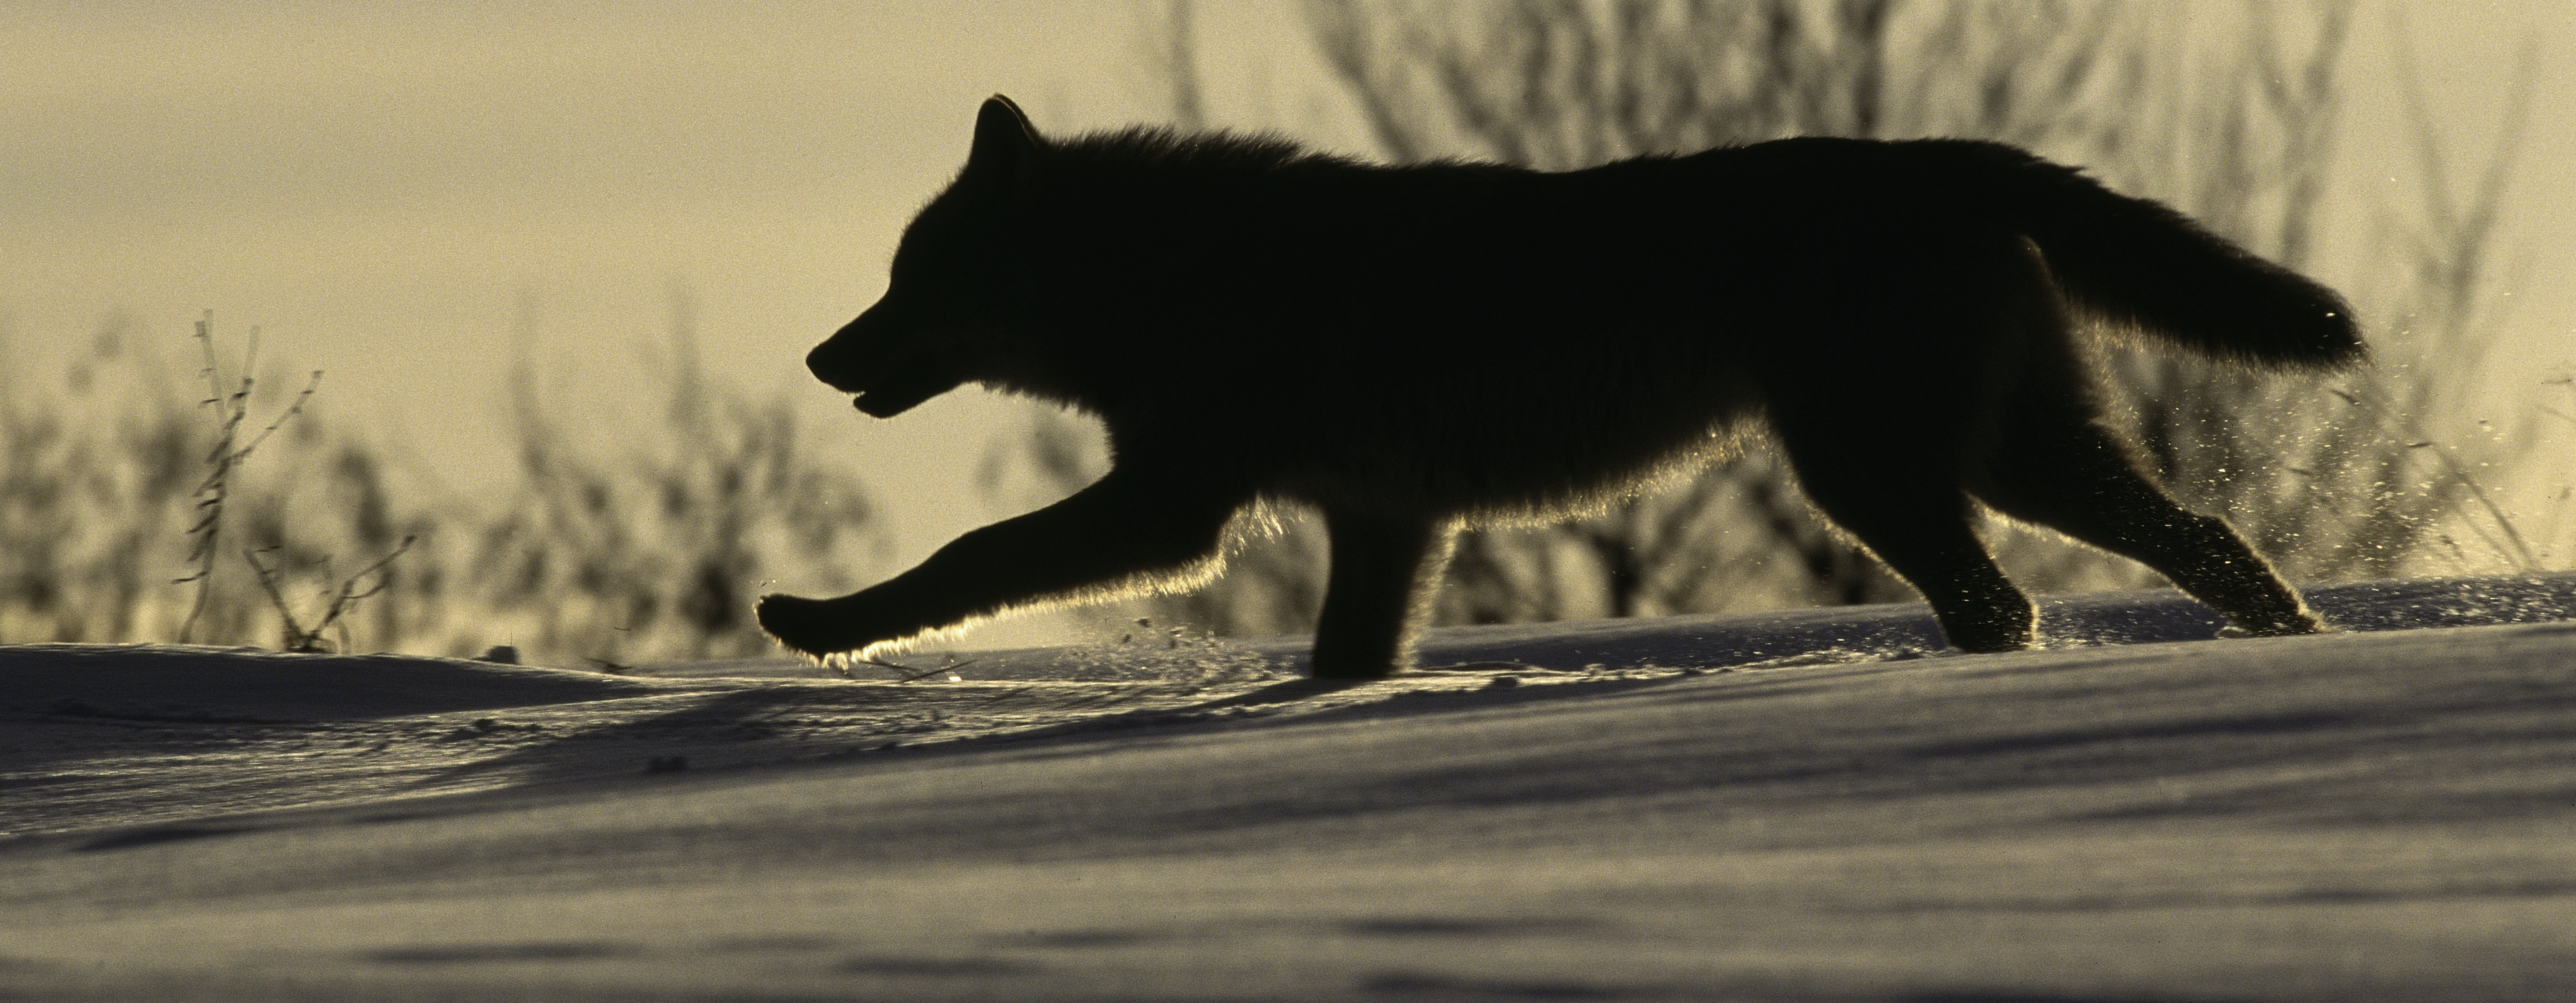 Ilustrační fotografie vlka ve sněhu.